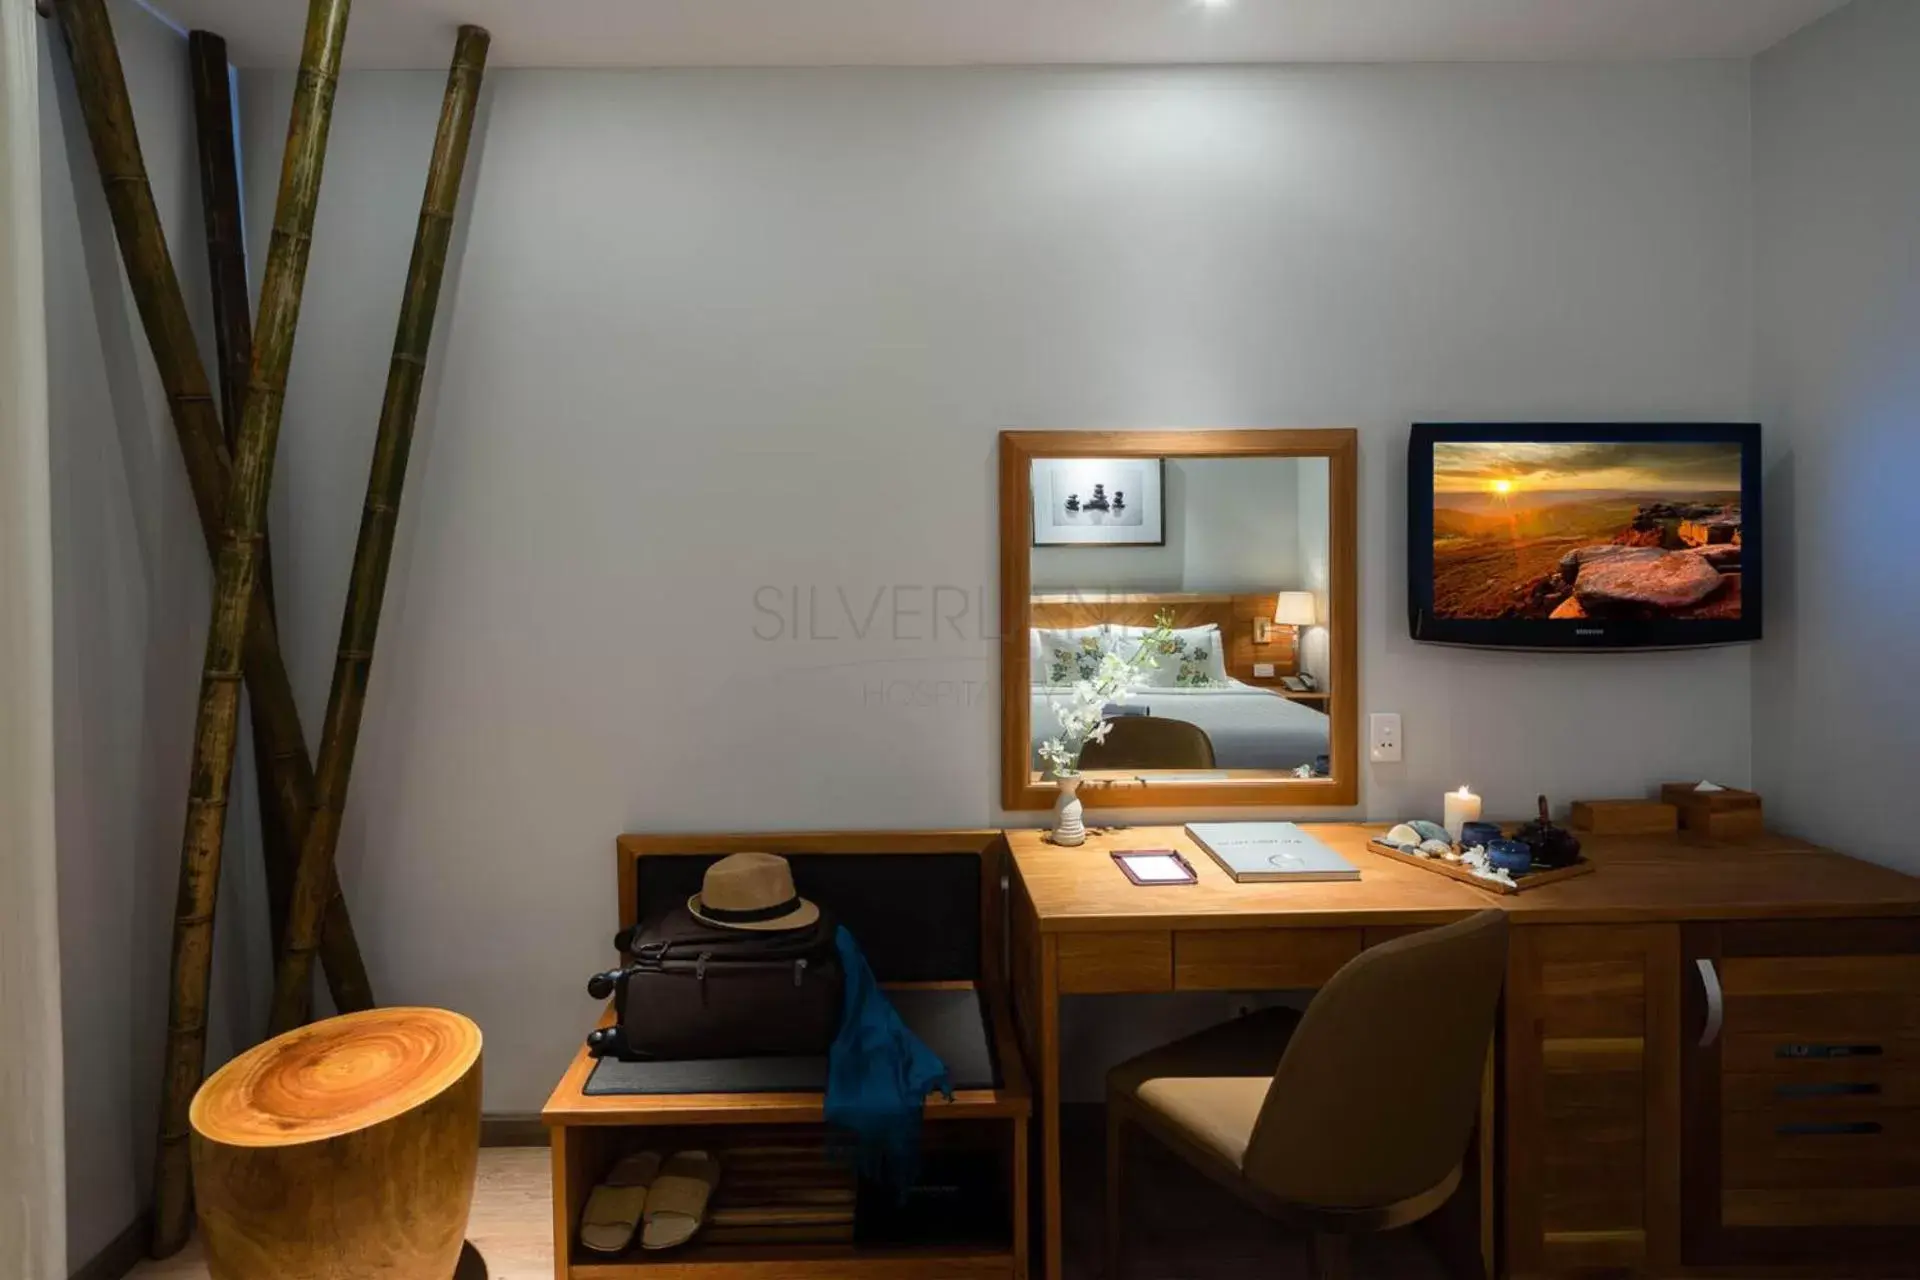 Living room, TV/Entertainment Center in Silverland Yen Hotel